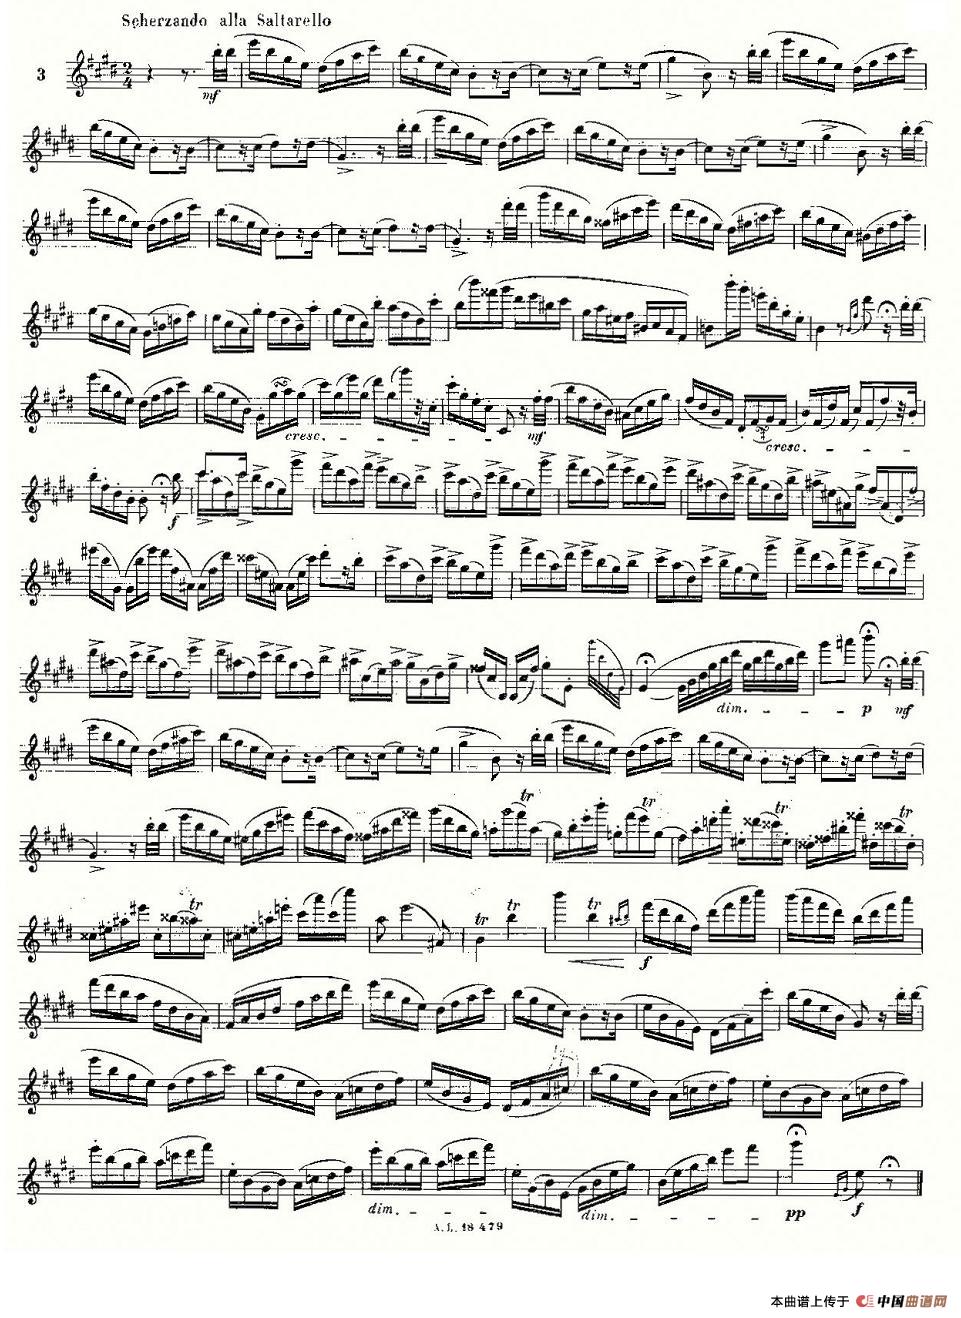 基于维尼亚夫斯基练习曲的10首长笛练习曲之3（